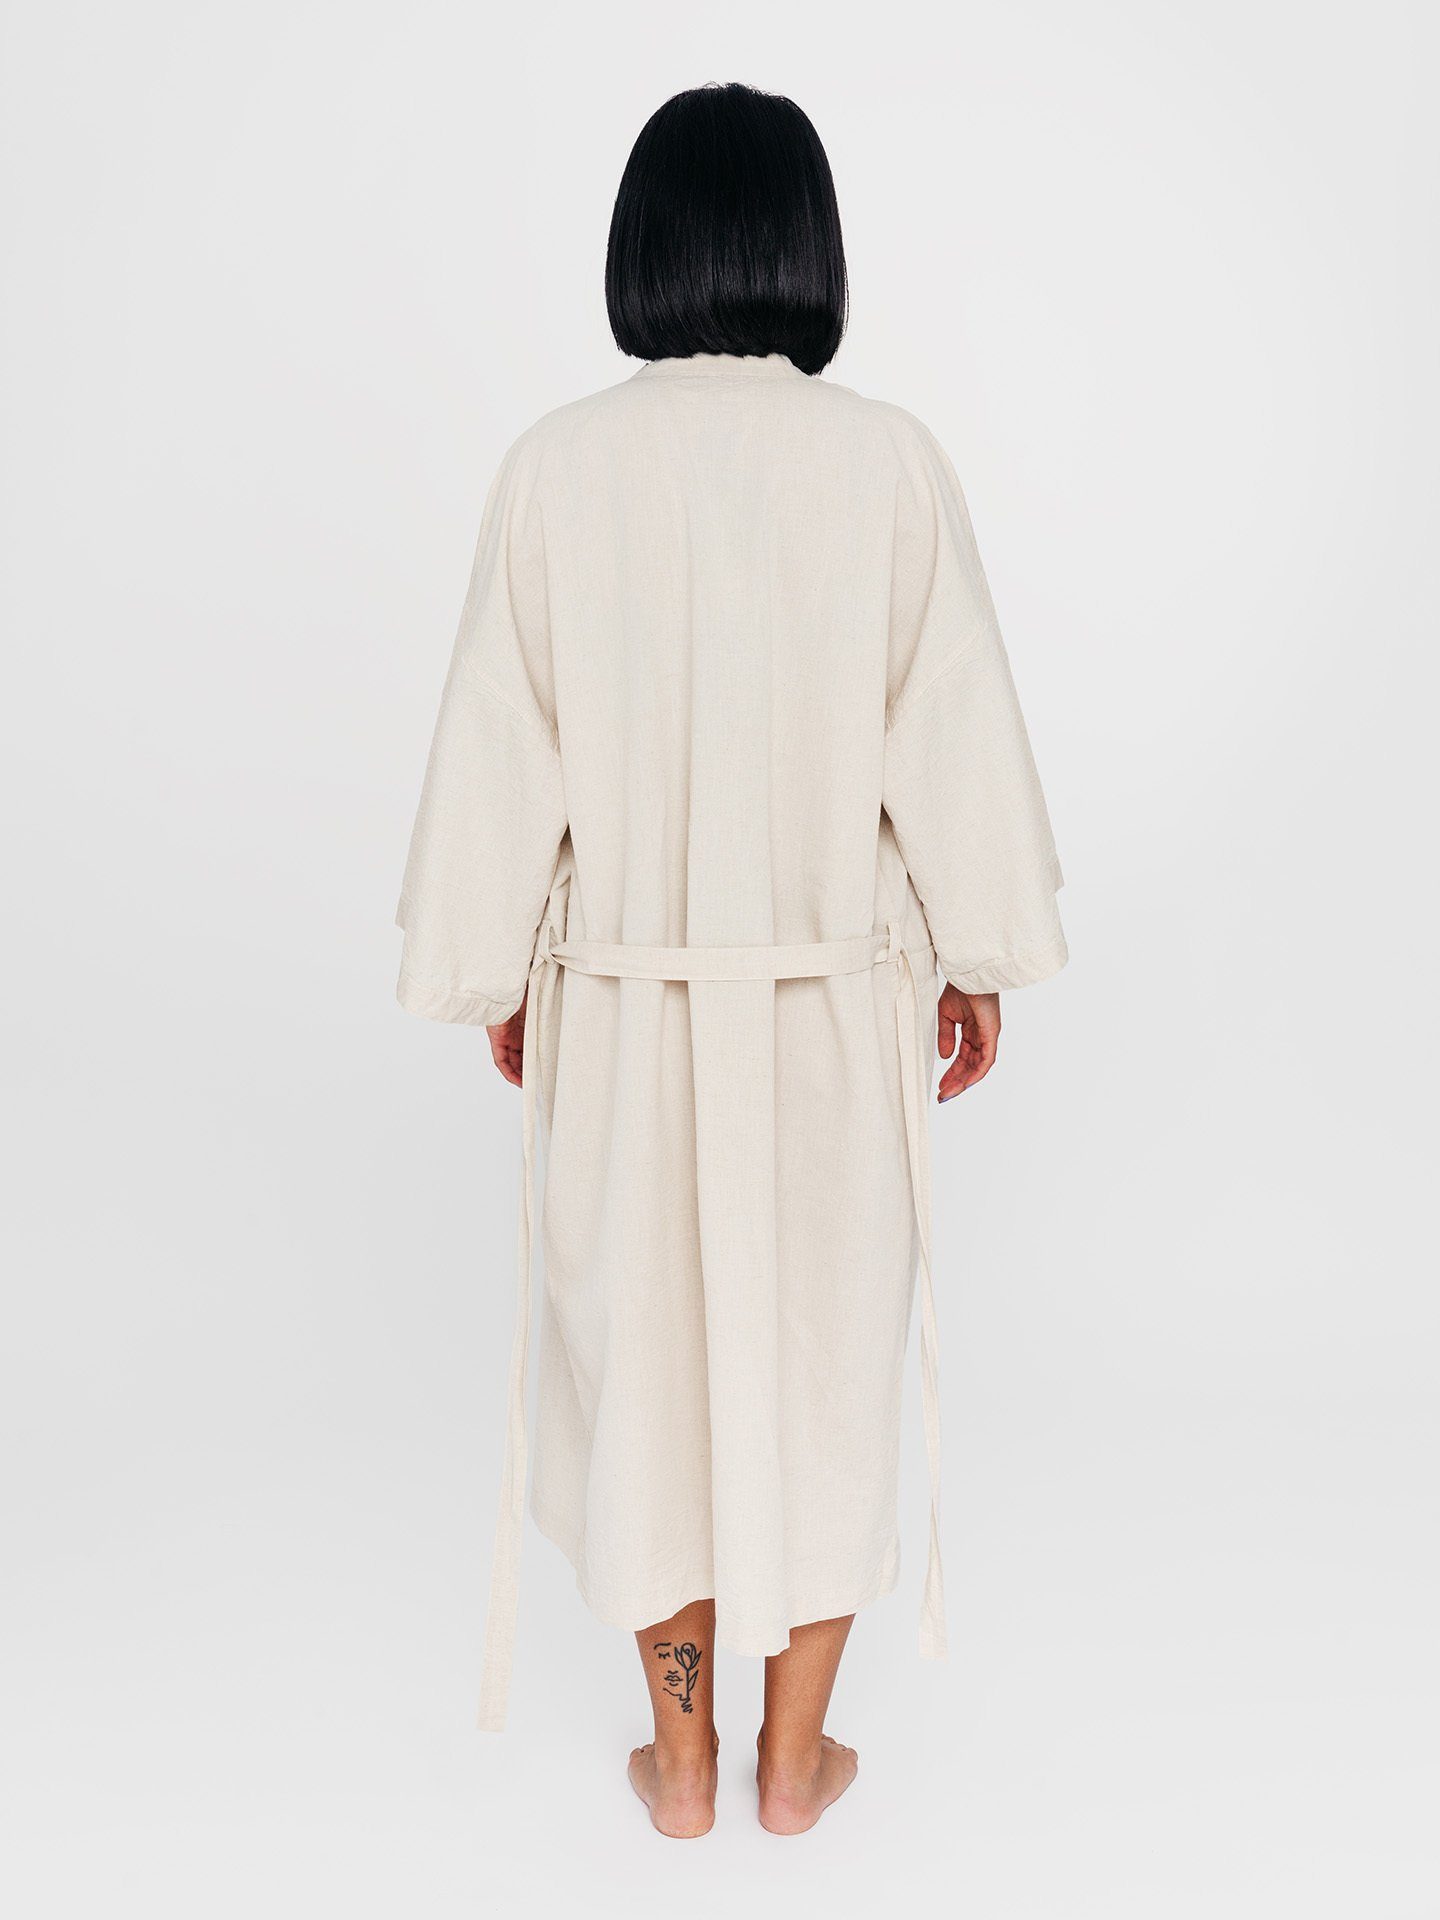 Textil Langform, Erlich Baumwolle-Leinen-Mischung Kimono, Kimono